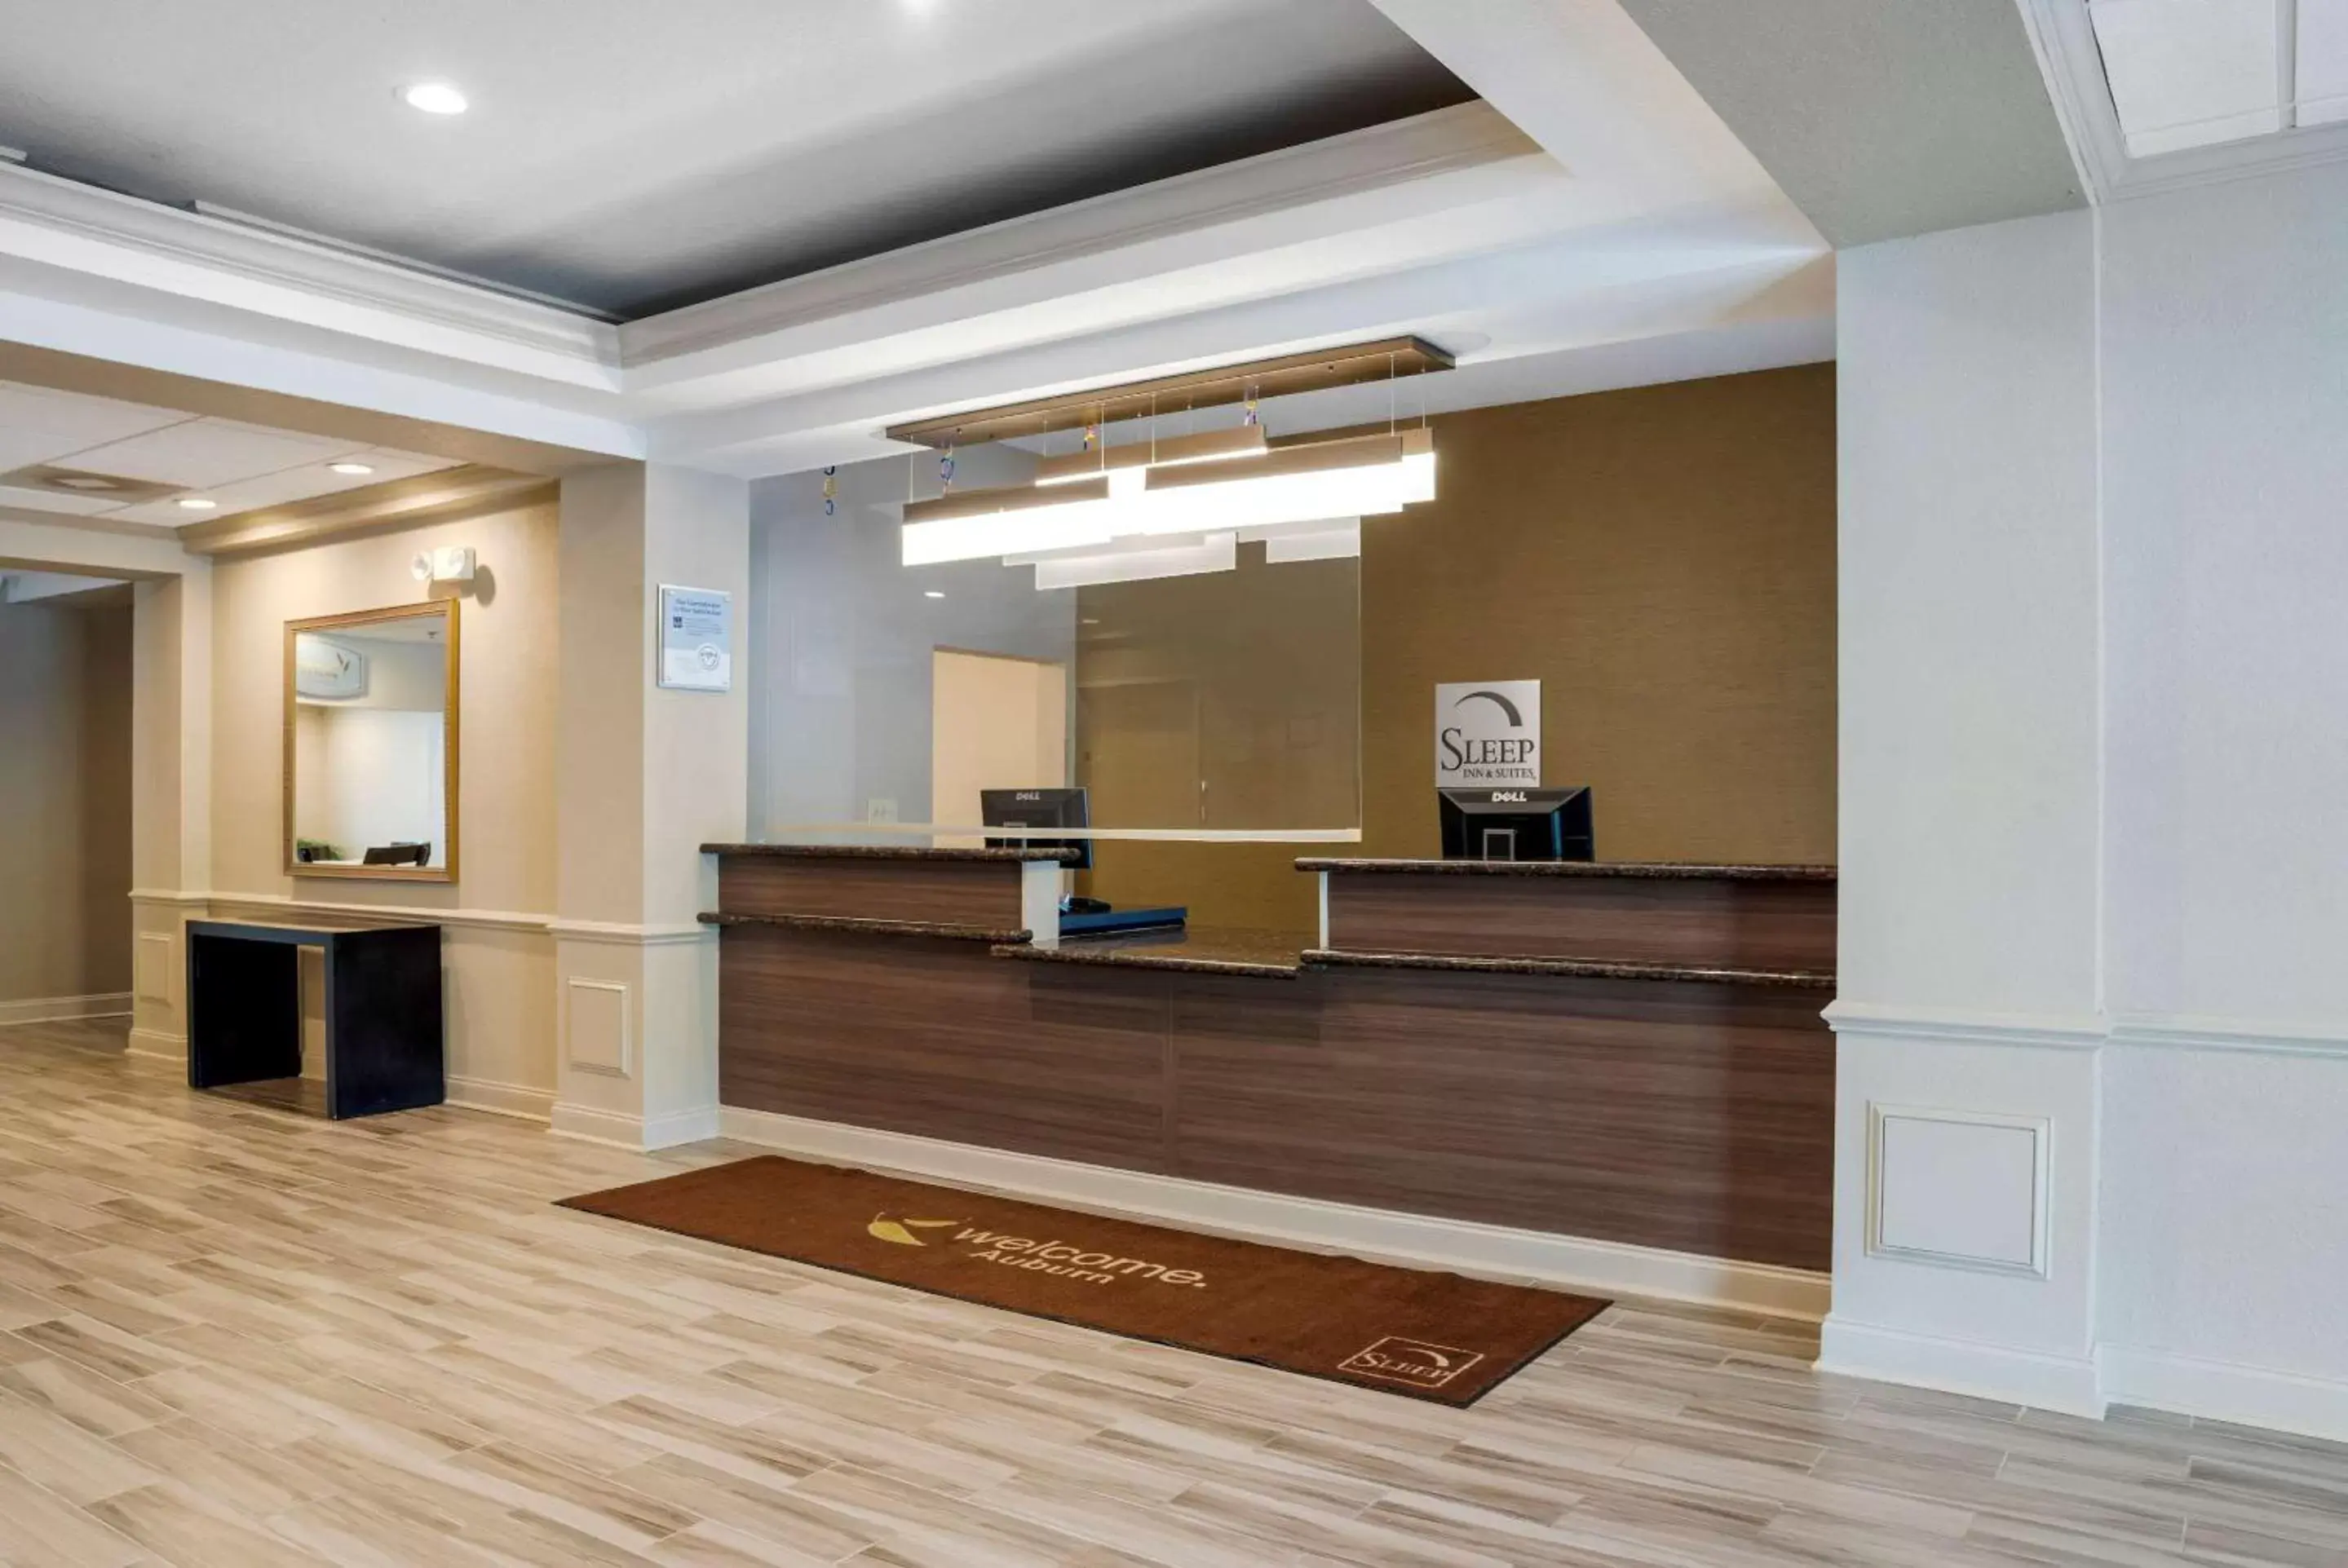 Lobby or reception, Lobby/Reception in Sleep Inn & Suites Auburn Campus Area I-85